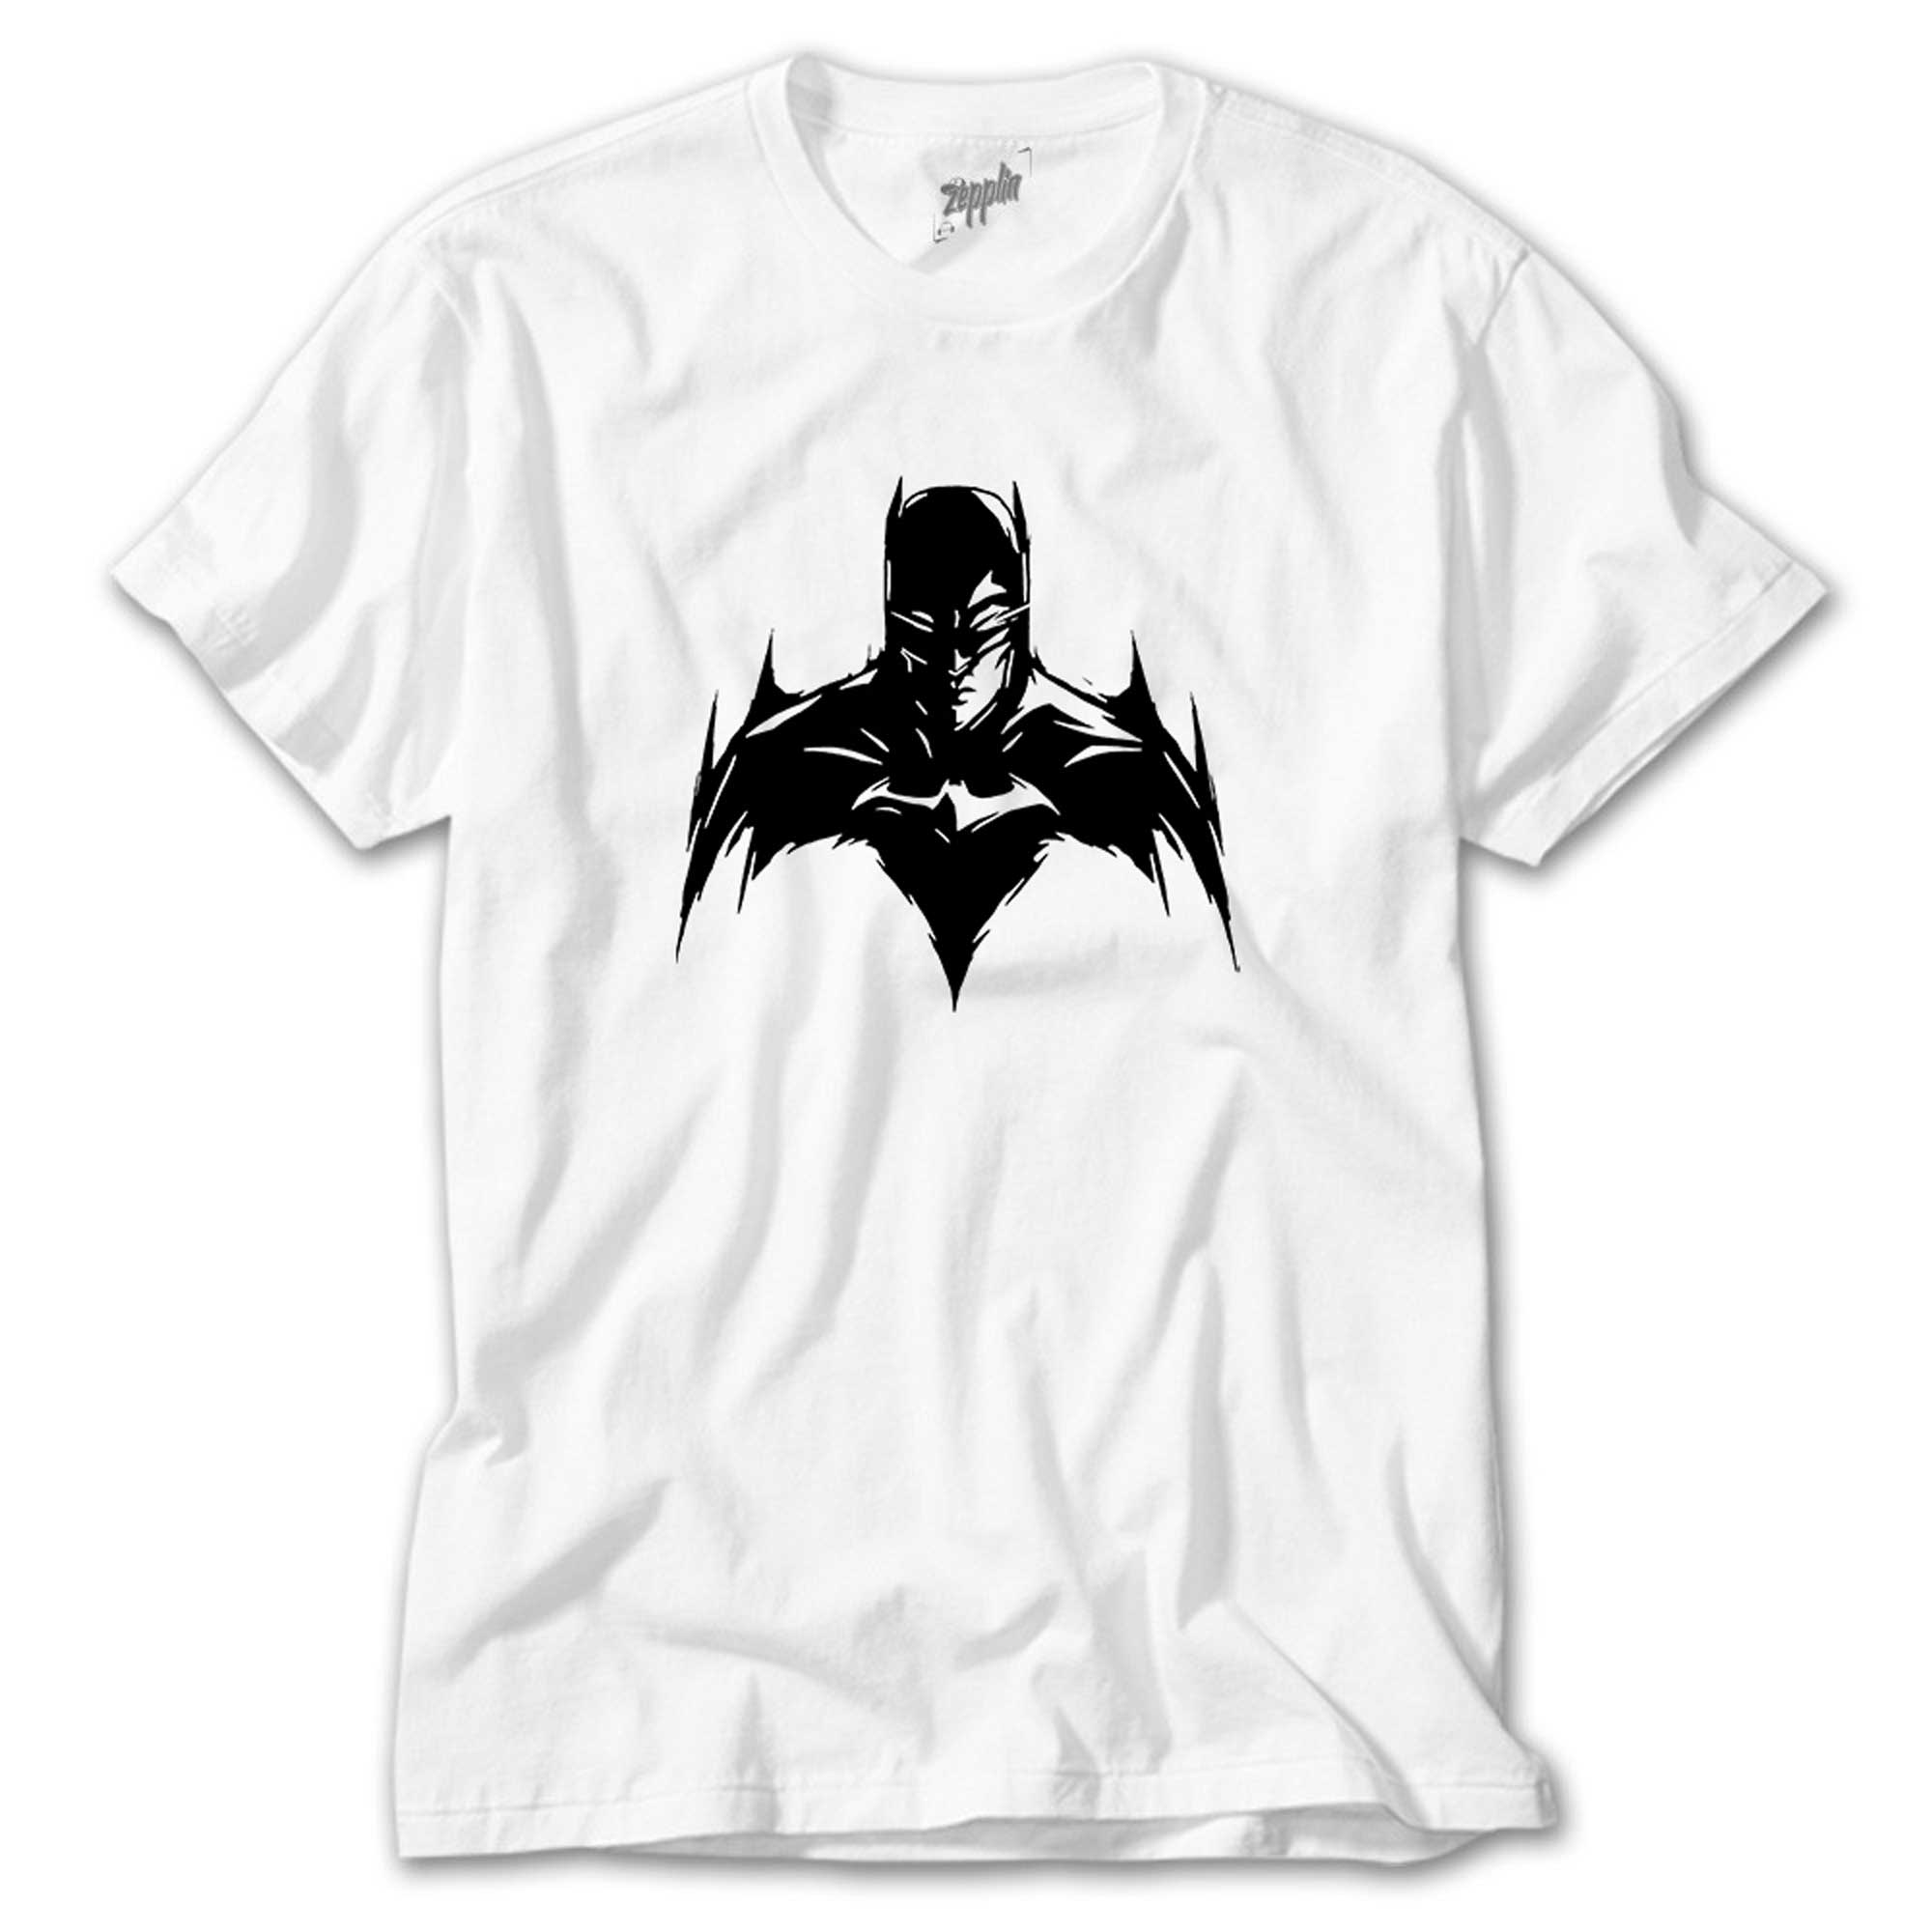 Batman Silluhette Beyaz Tişört